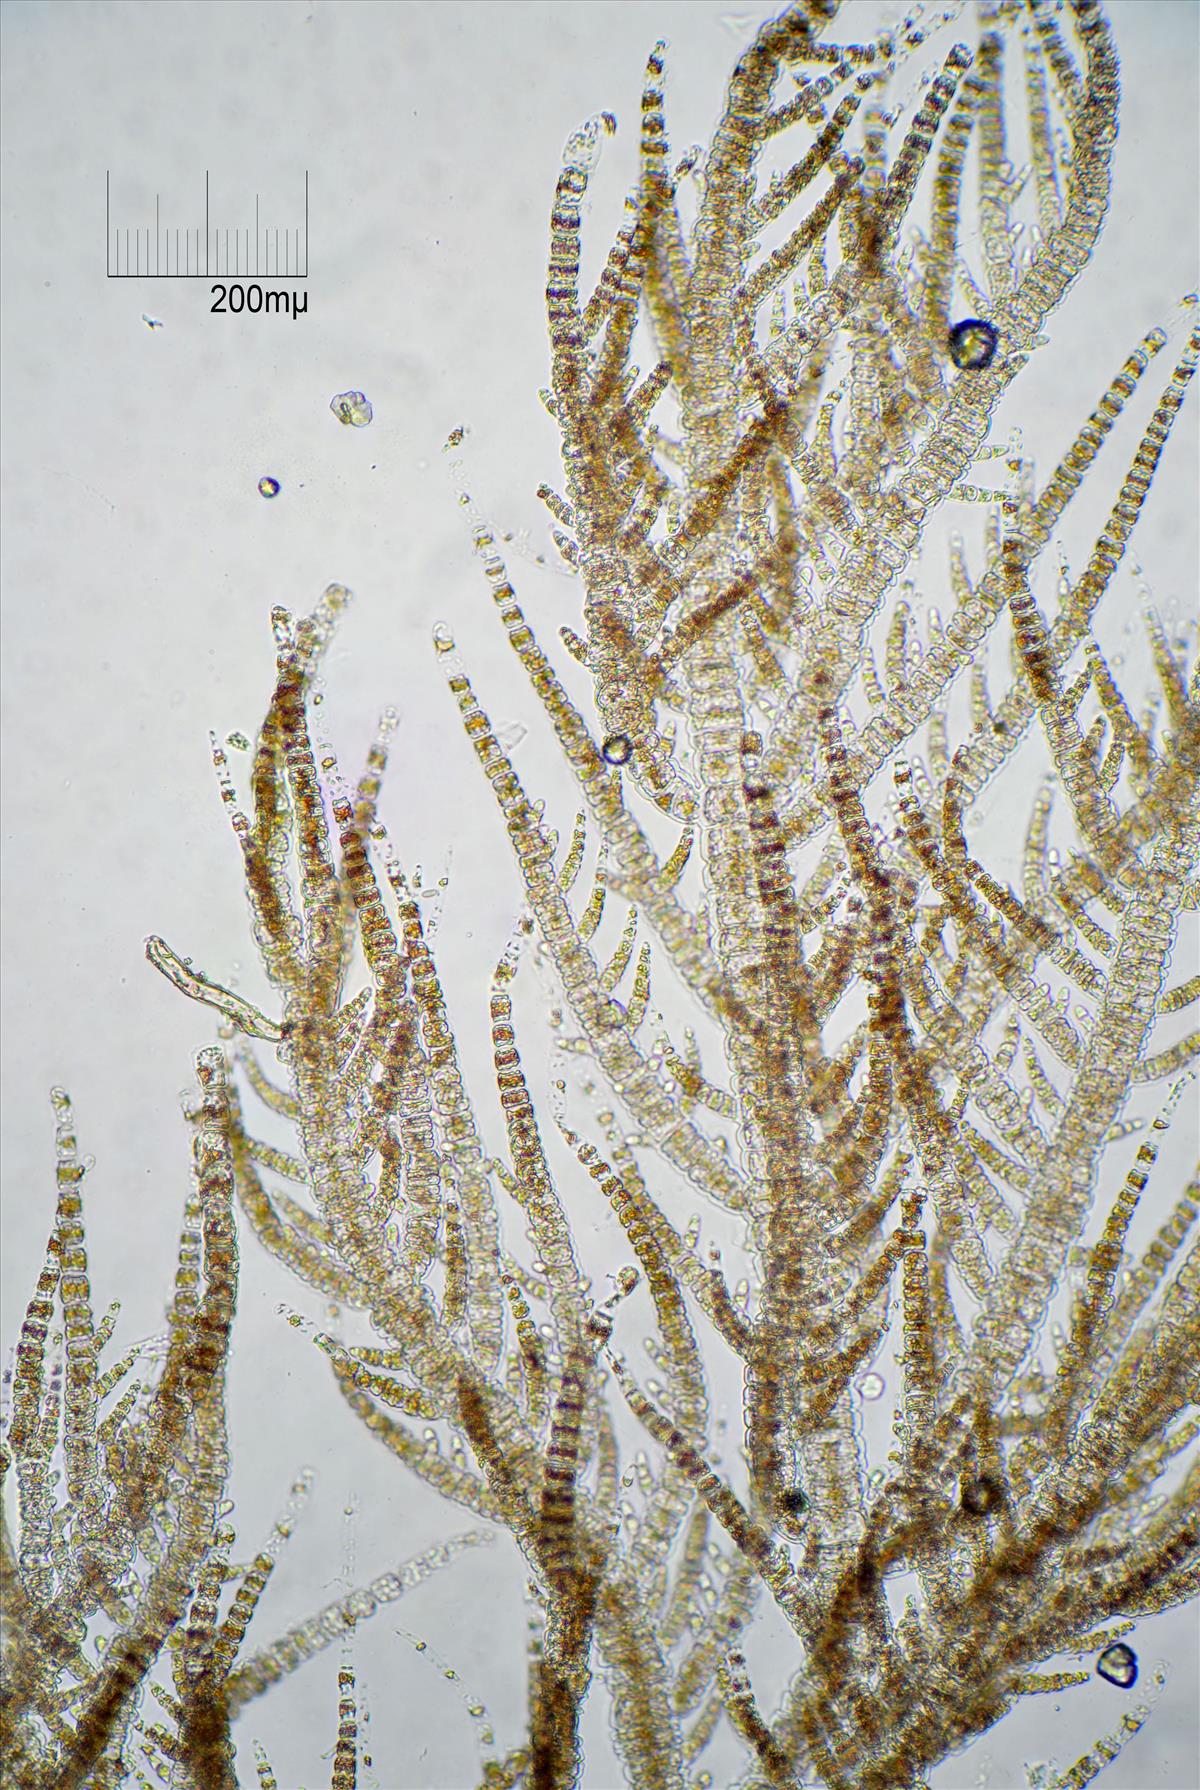 Ectocarpus siliculosus (door Mart Karremans)